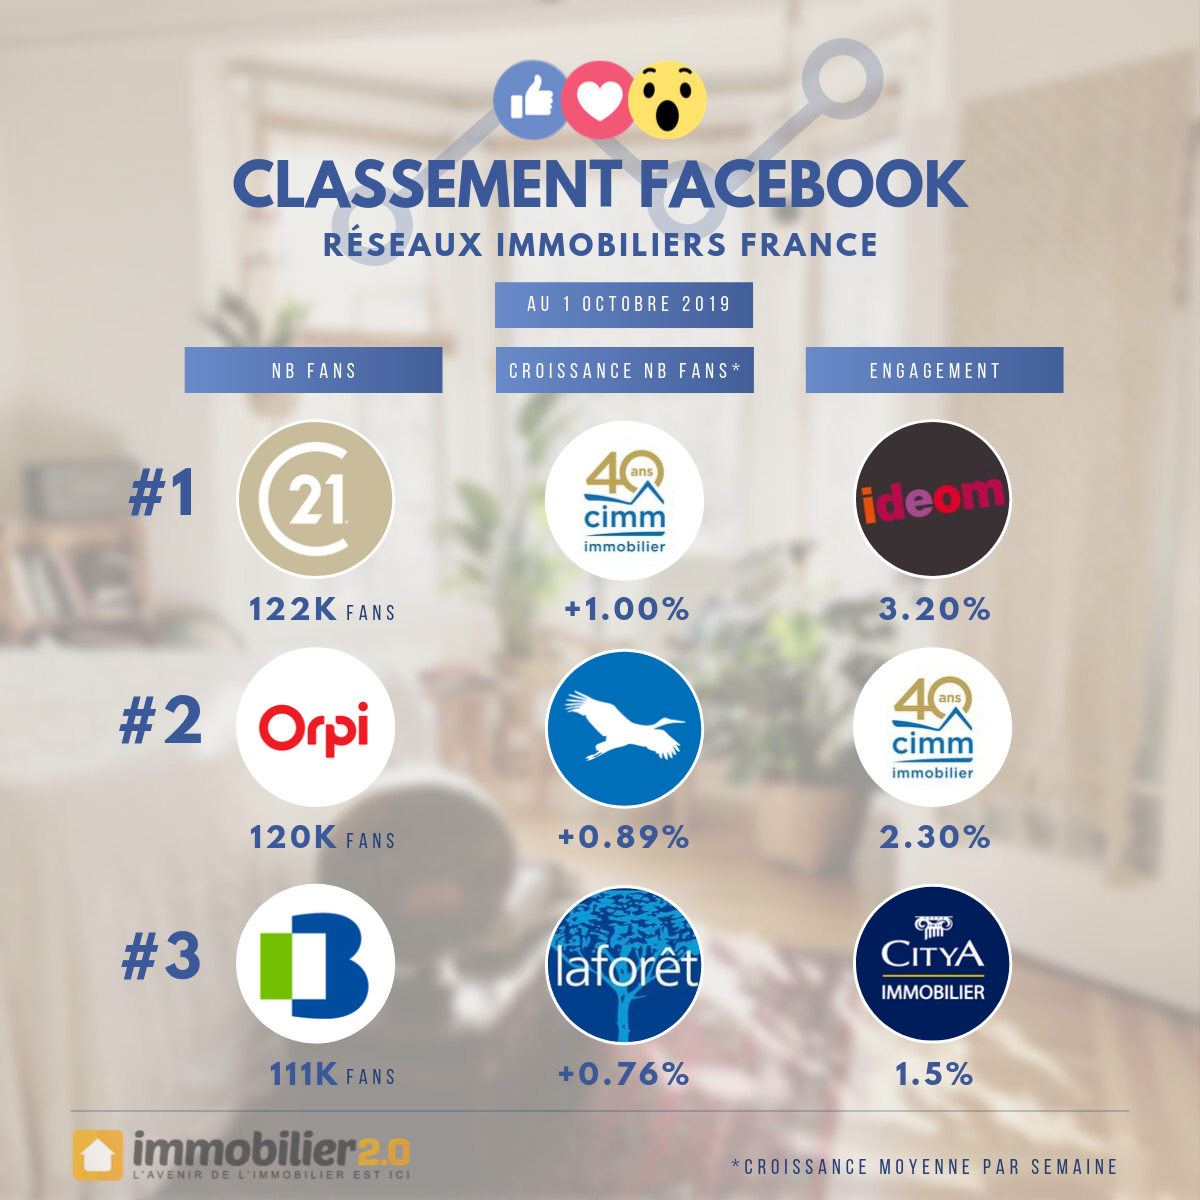 Classement Facebook Reseaux Immobiliers France Octobre 2019